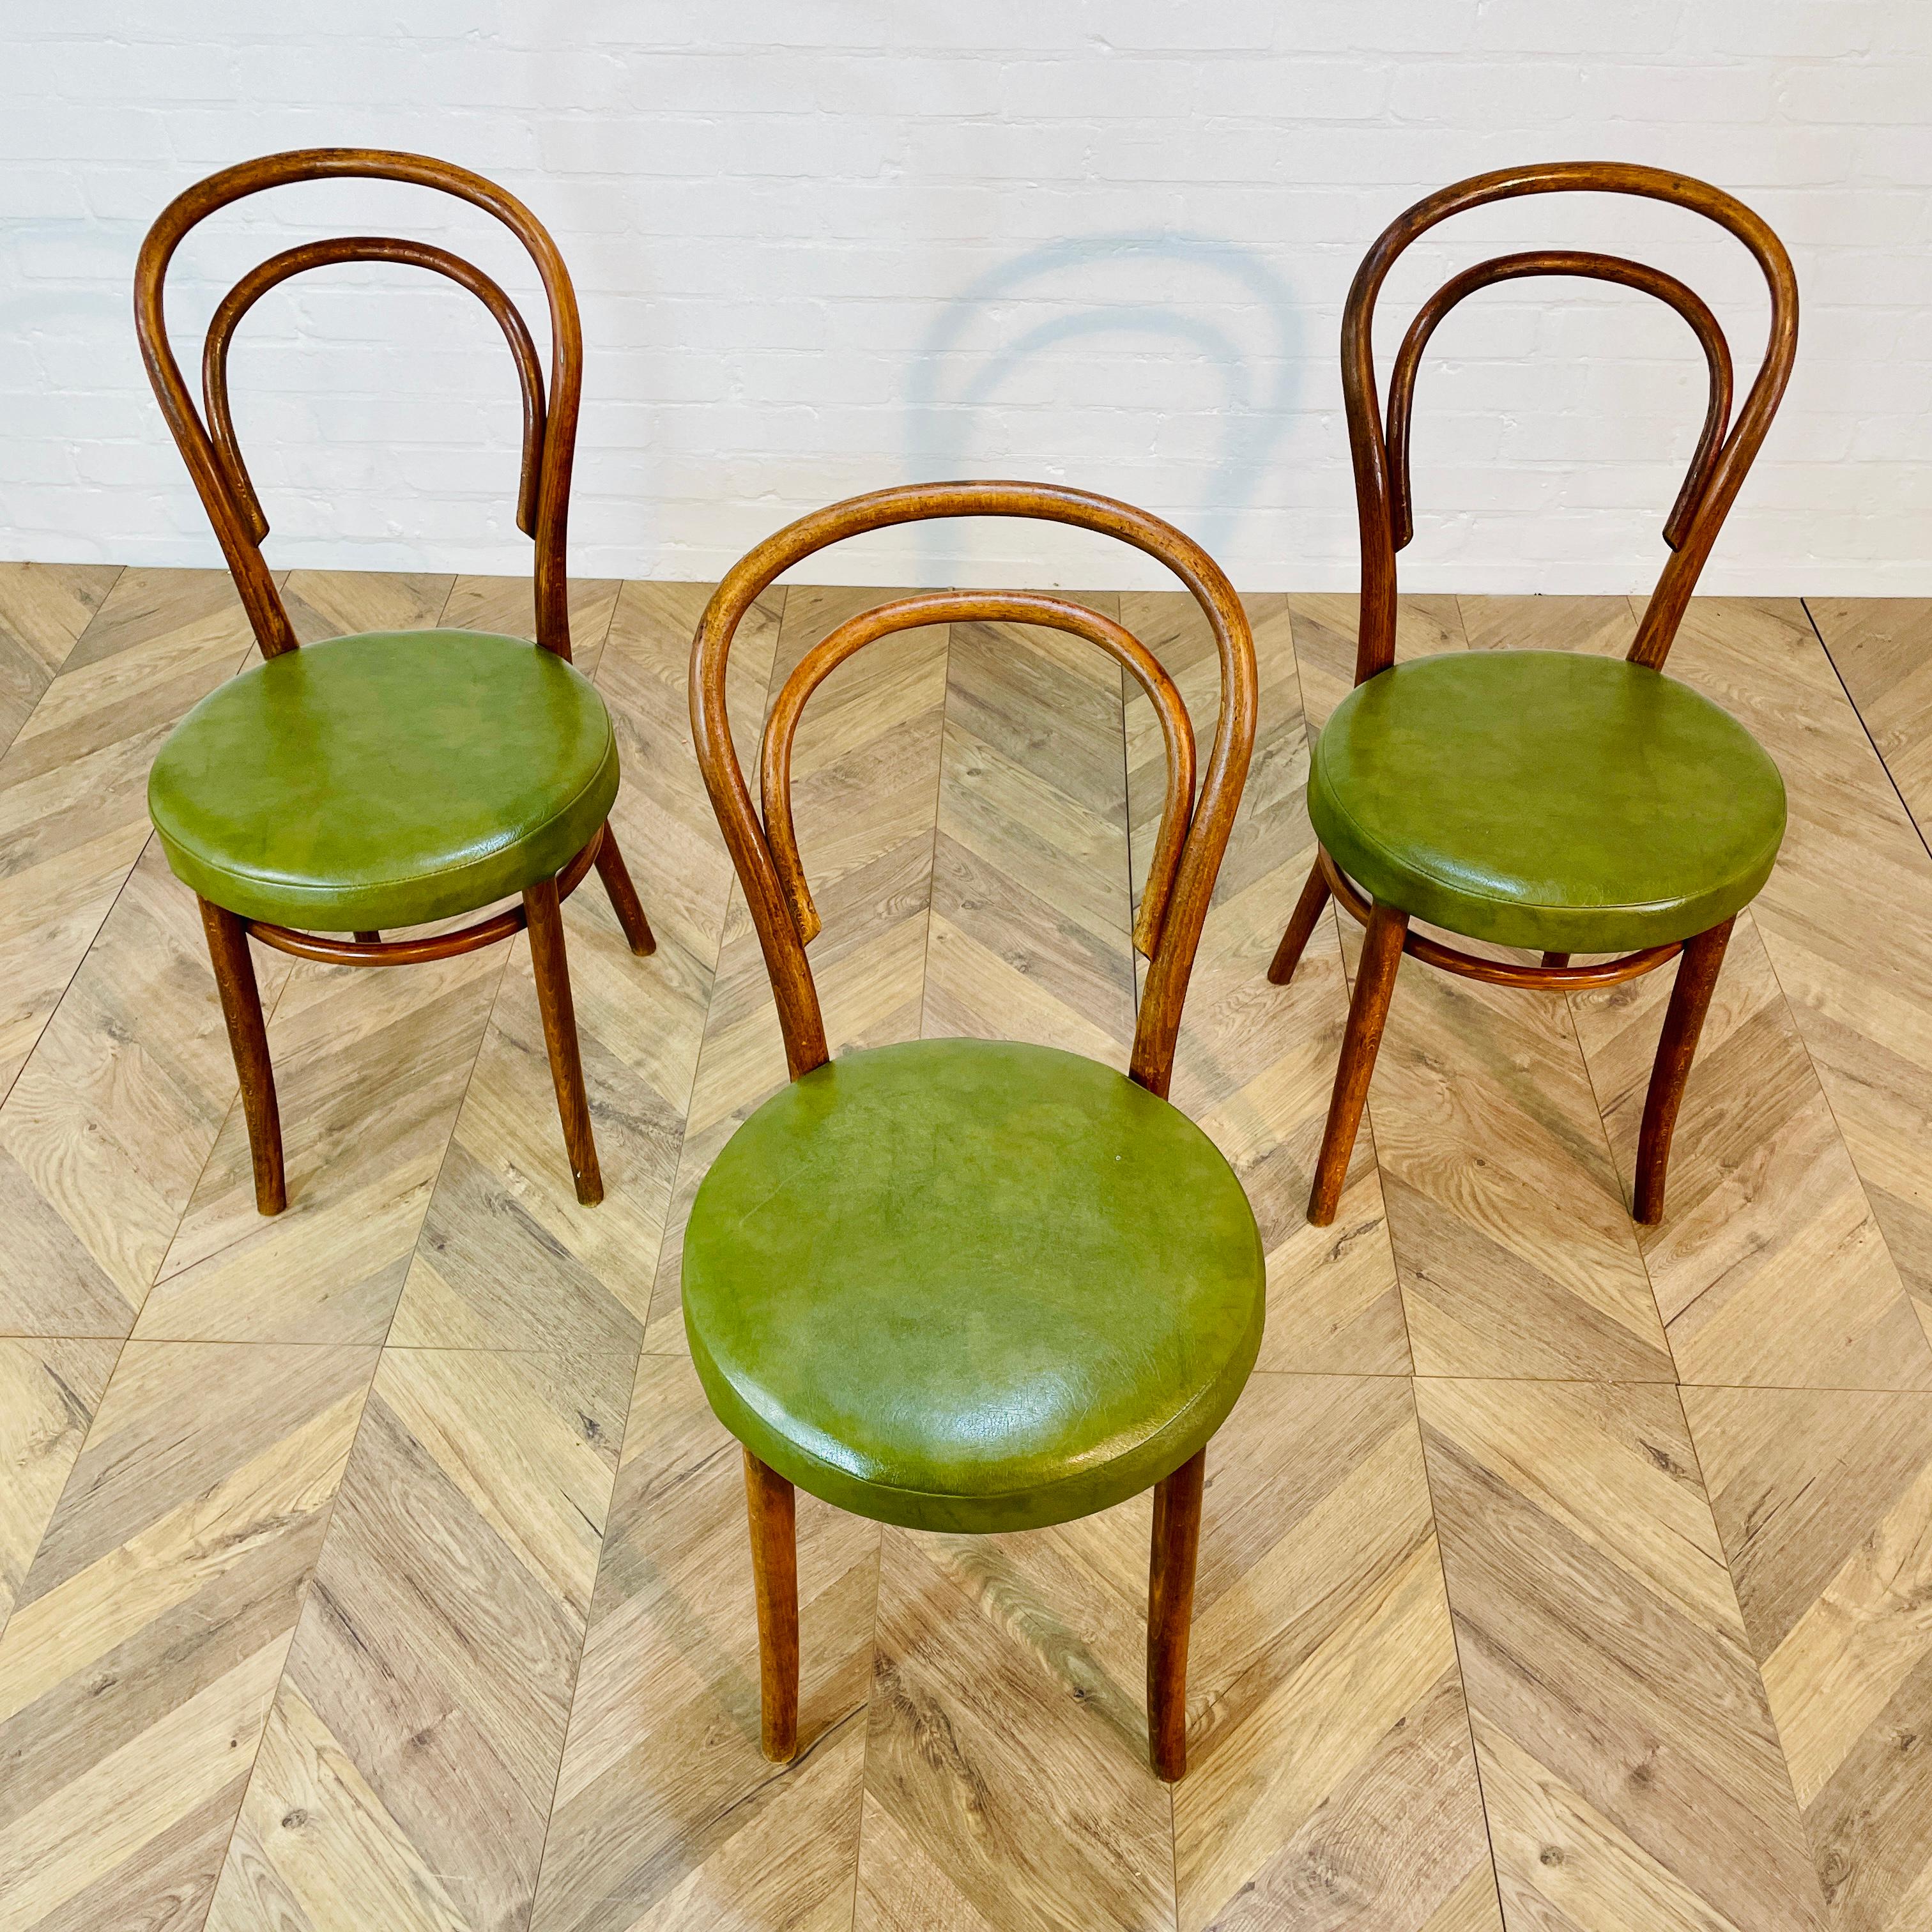 Ensemble de 3 chaises en bois courbé ZPM Radomsko, circa 1950.

Les chaises fabriquées par le fabricant de meubles polonais Radomsko ZMG, Famed for also making Thonet chairs (same factory) sont en bon état vintage avec seulement de petites marques